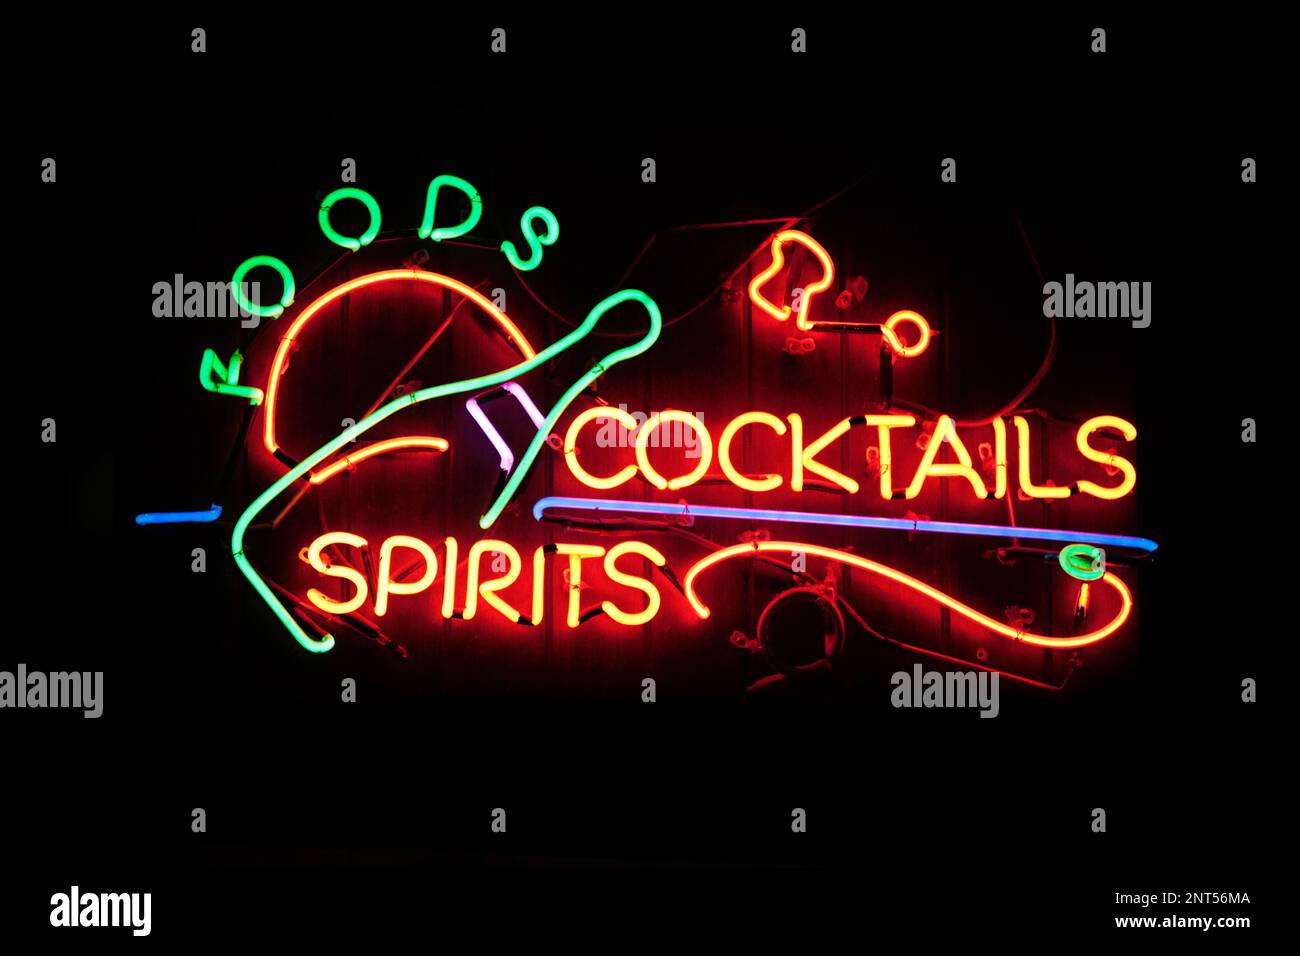 Una luce al neon modellata nella frase “Foods cocktails Spirits” con una bottiglia di champagne sul lato sinistro. Il bagliore del neon lascia apparire un mattone wa Foto Stock